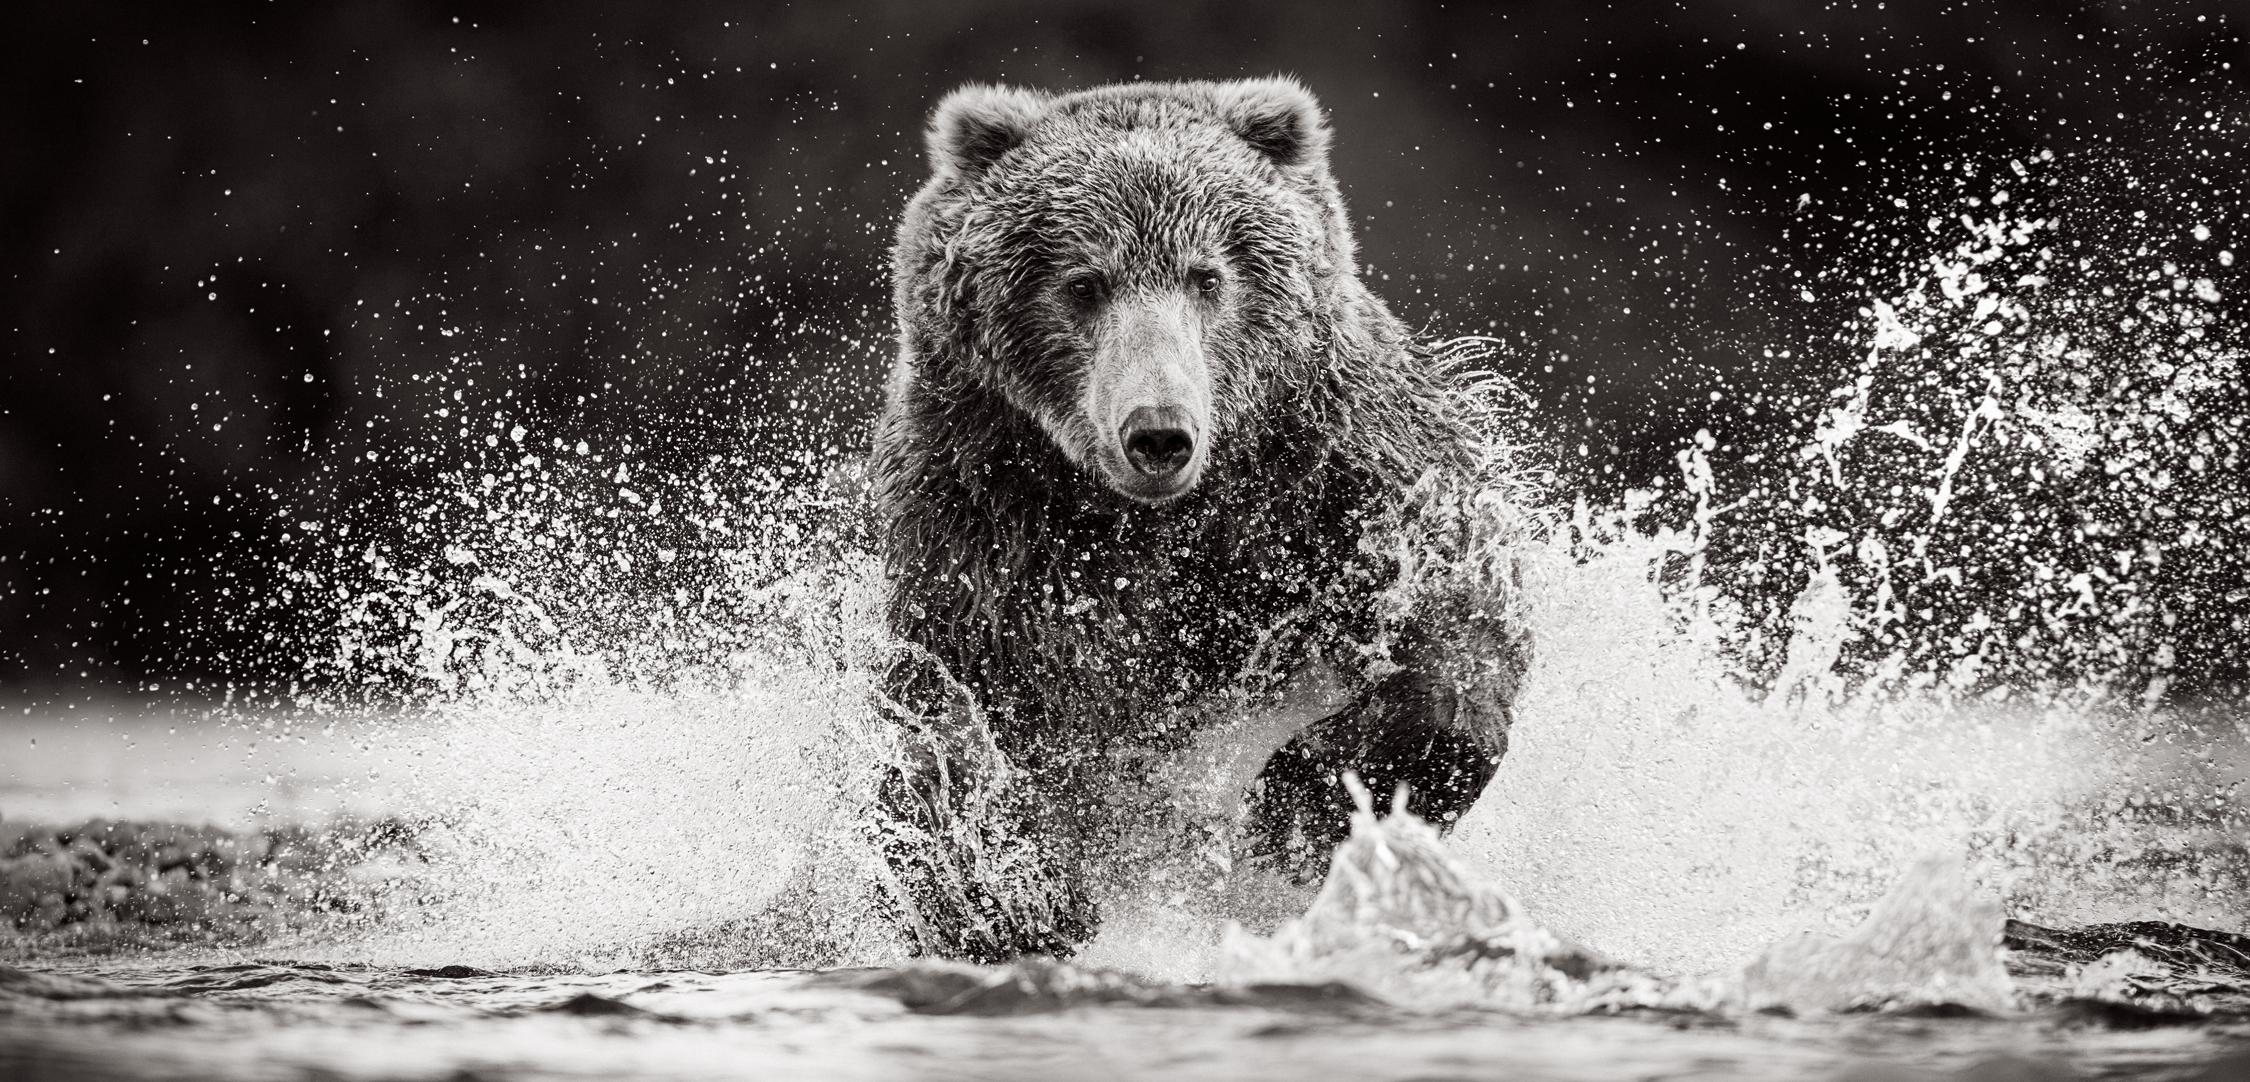 Drew Doggett Black and White Photograph – Brauner Bär stürmt durchs Wasser